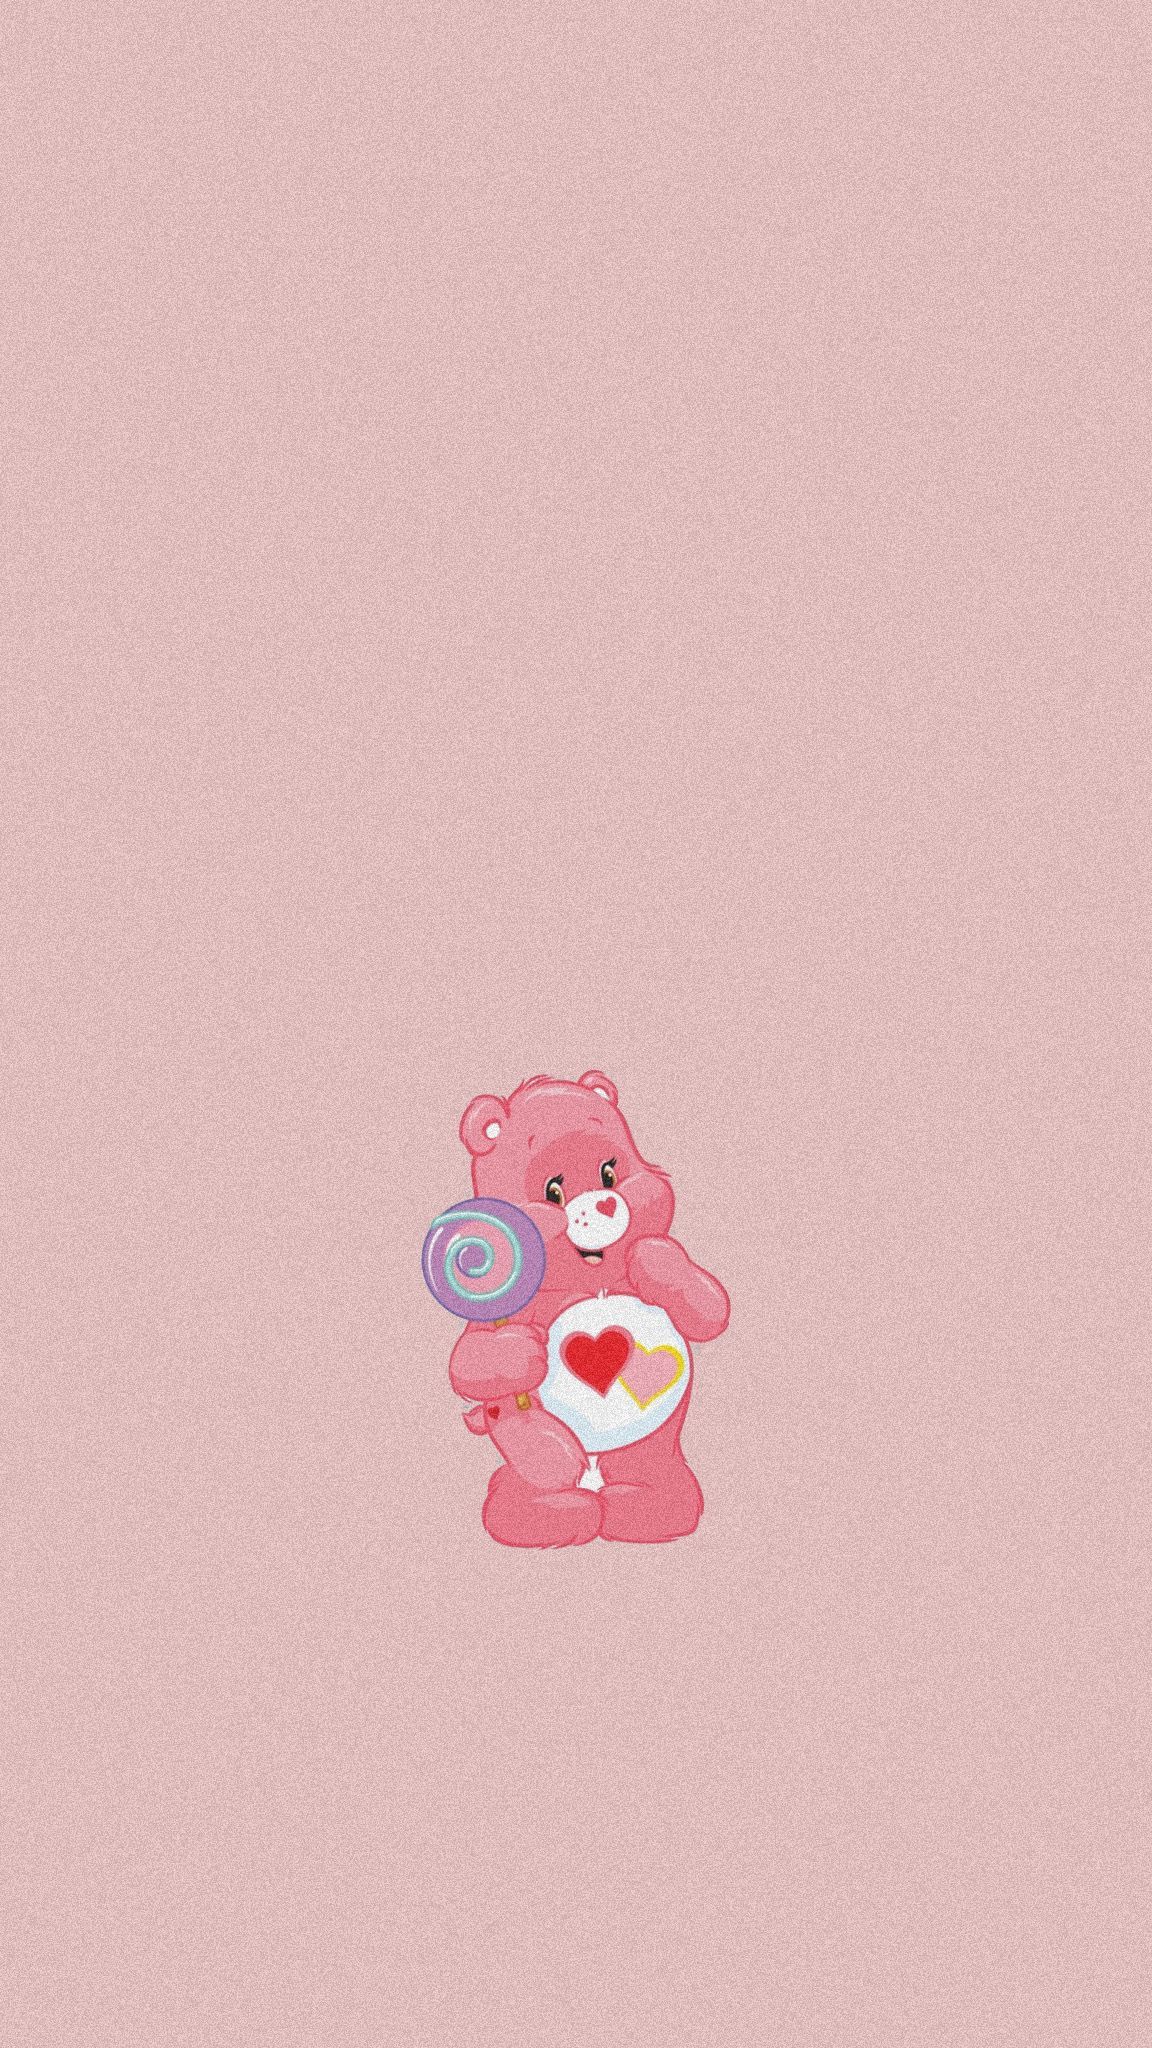 A pink teddy bear holding an ice cream cone - Teddy bear